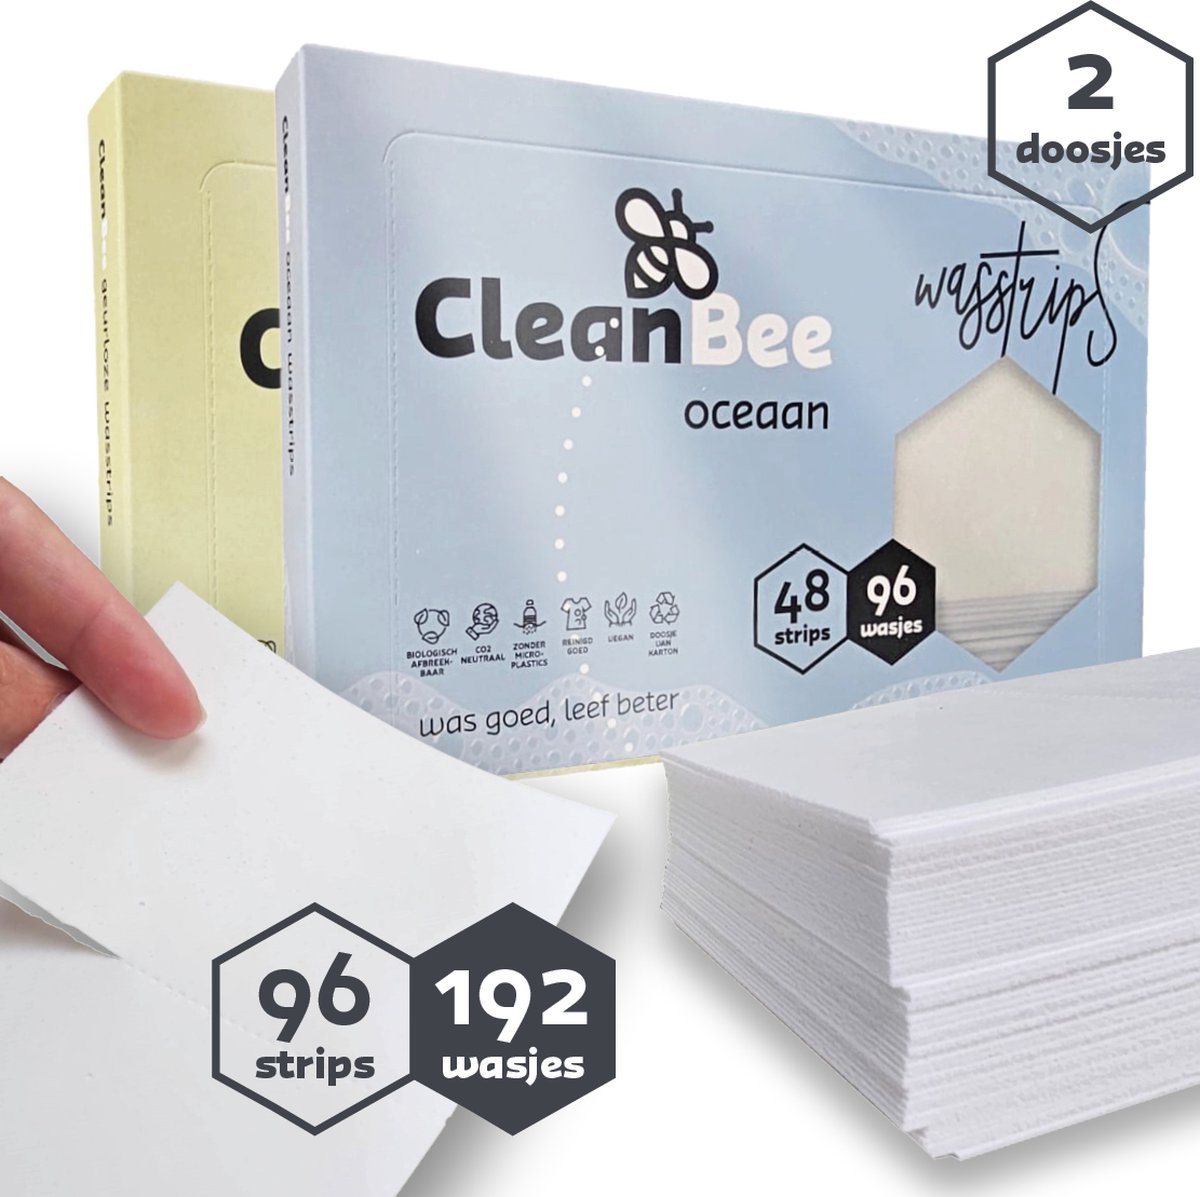 CleanBee® proefpakket 2 x 96 wasbeurten - Geurloos - Oceaan - Wasstrips - Wasmiddel Voordeelverpakking - Eco - Wasdoekjes - Duurzaam - Plasticvrij -